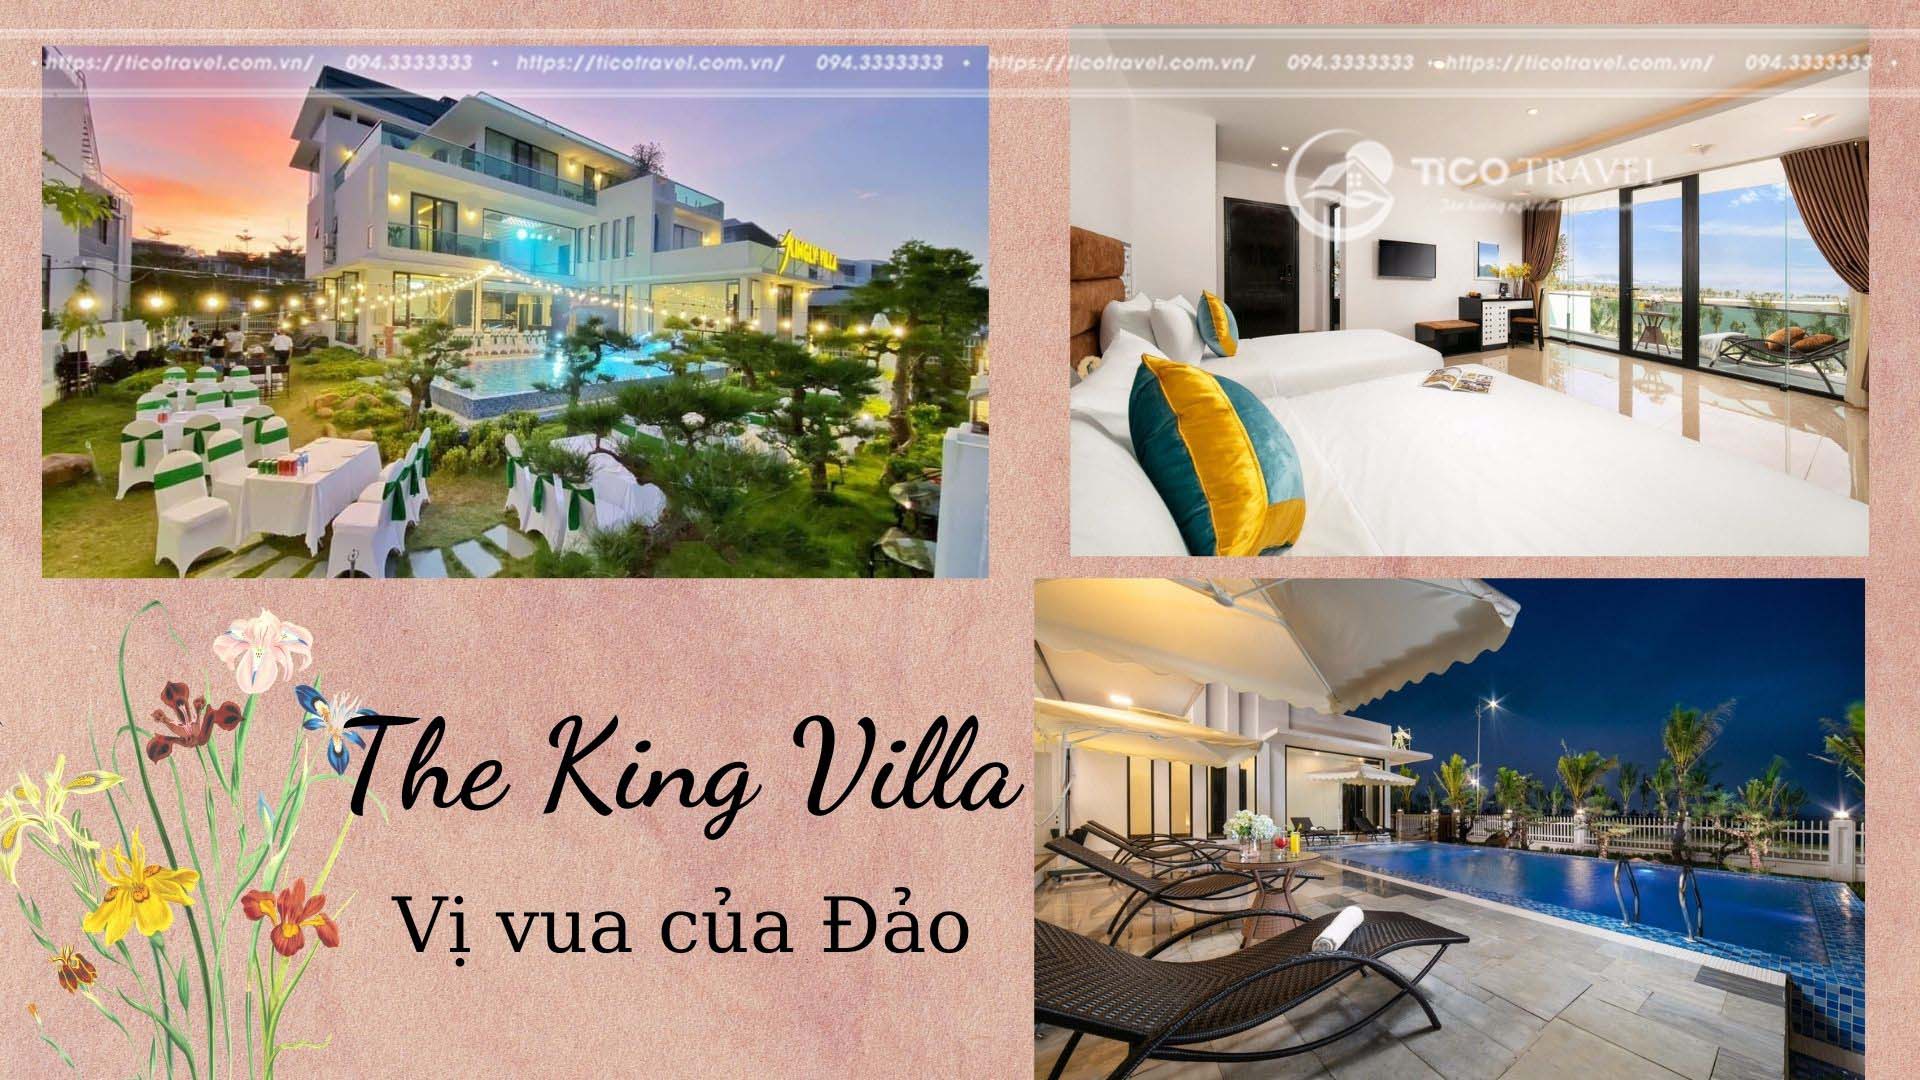 Ảnh chụp Tico The King Villa Hạ Long